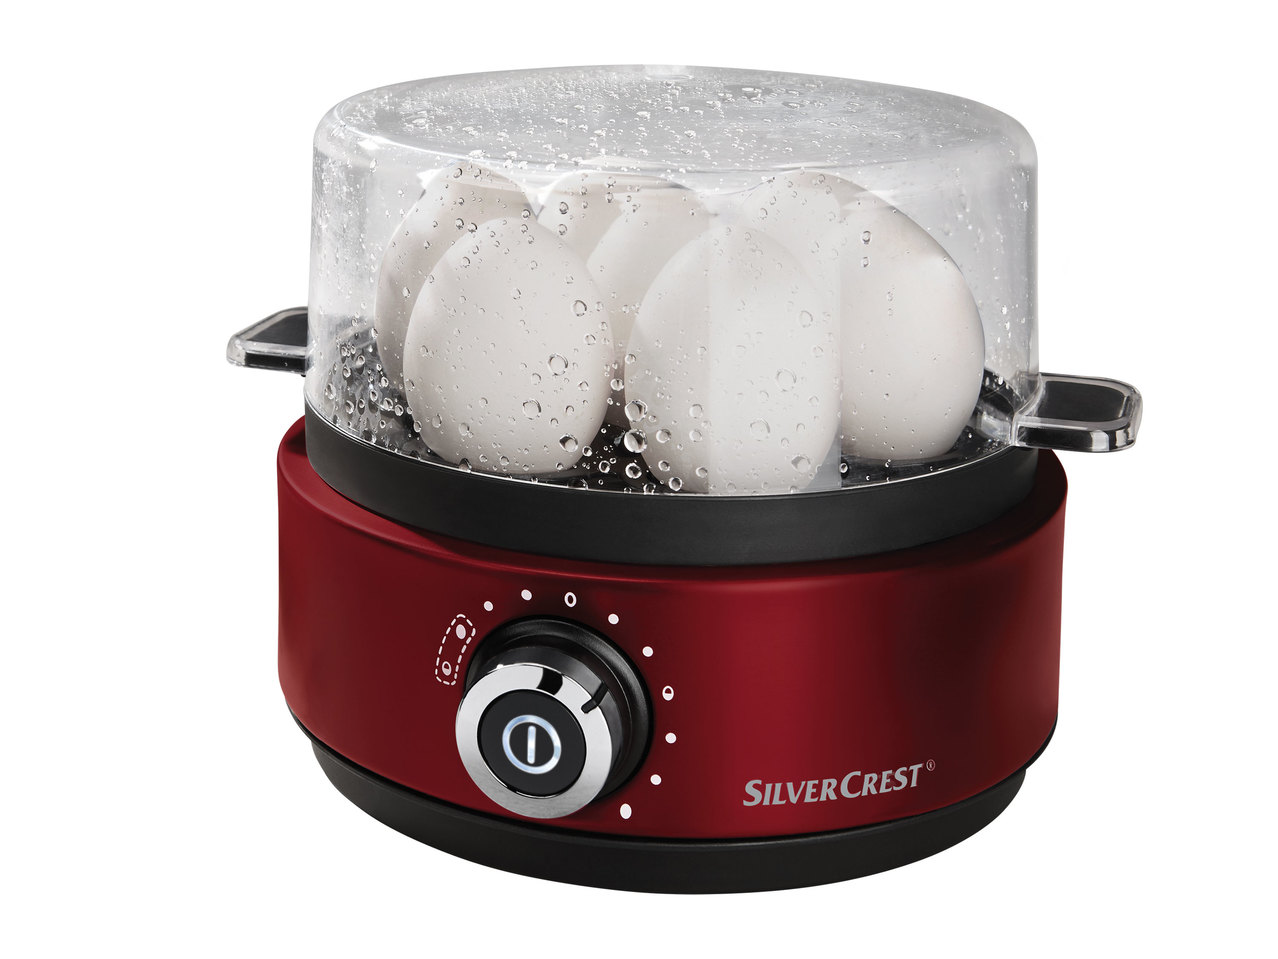 Silvercrest Egg Cooker1